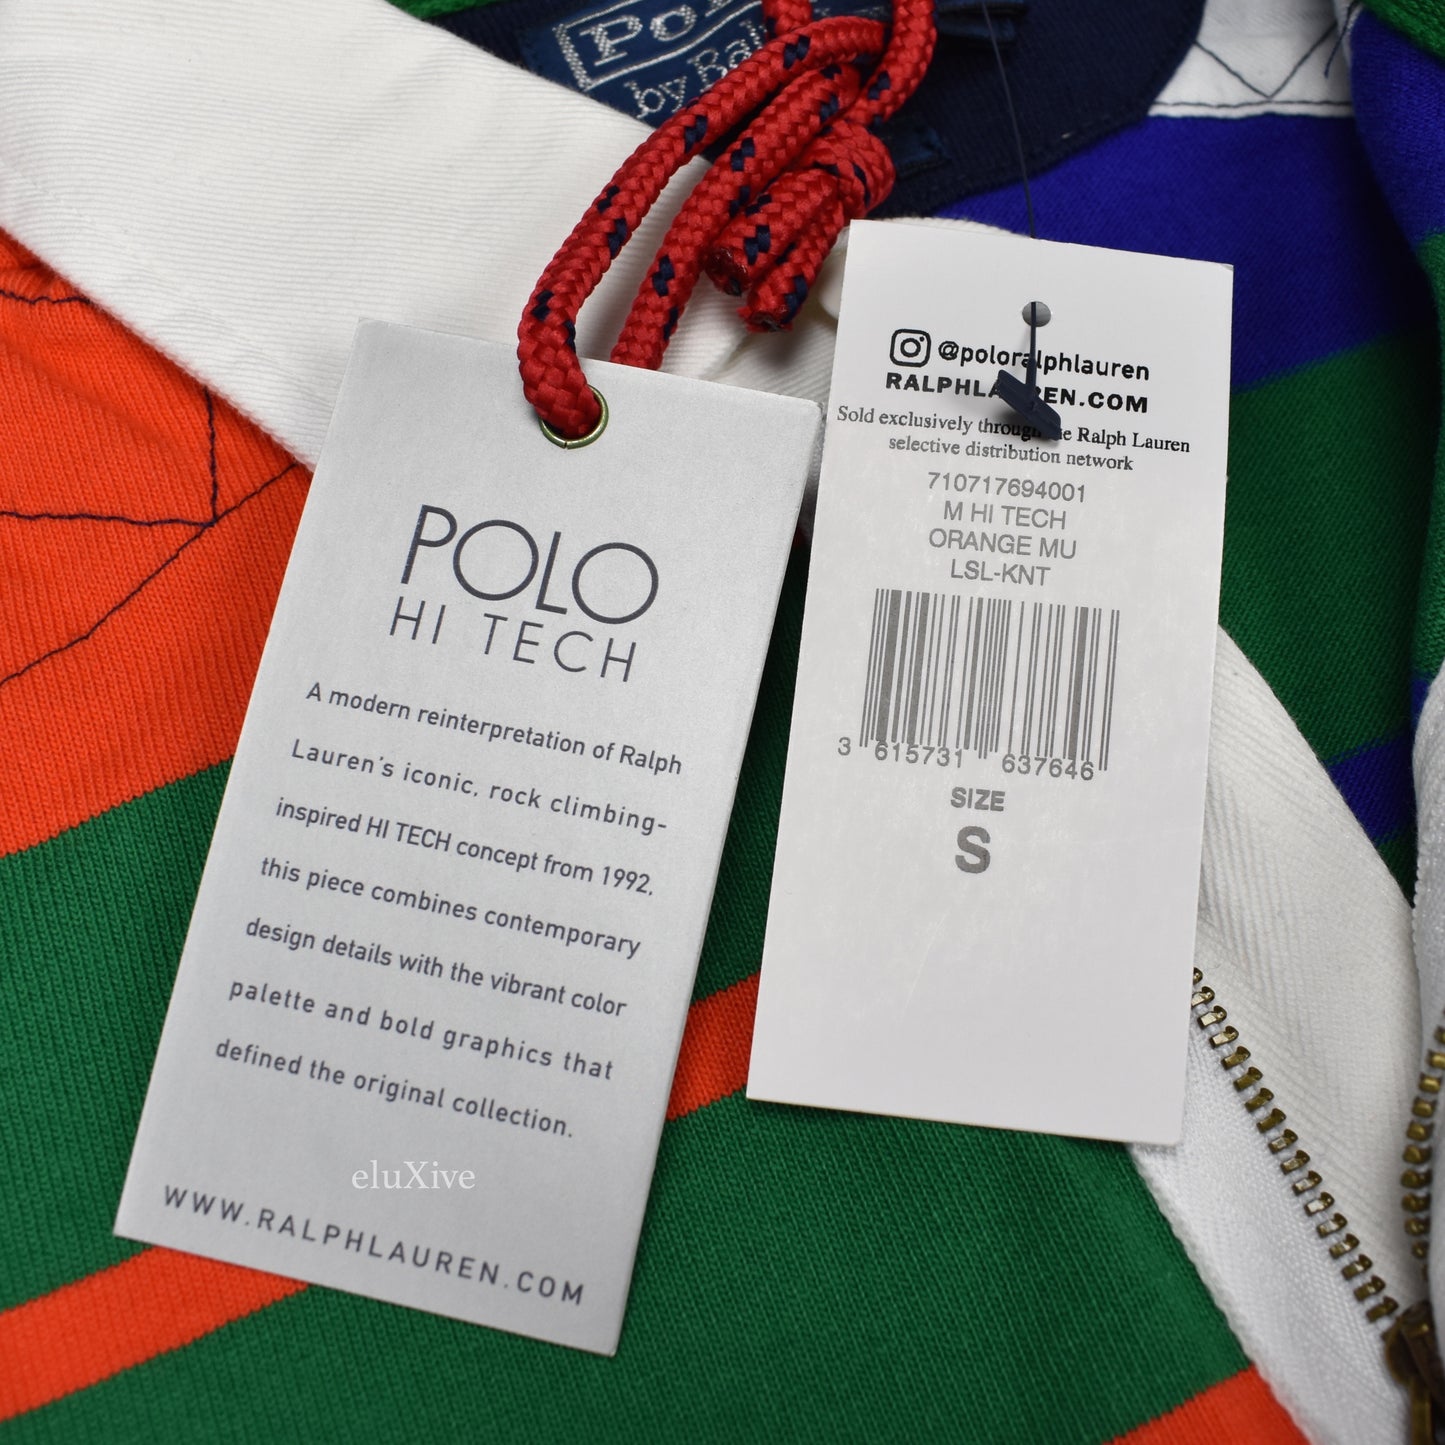 Polo Ralph Lauren - Hi-Tech Rugby Shirt